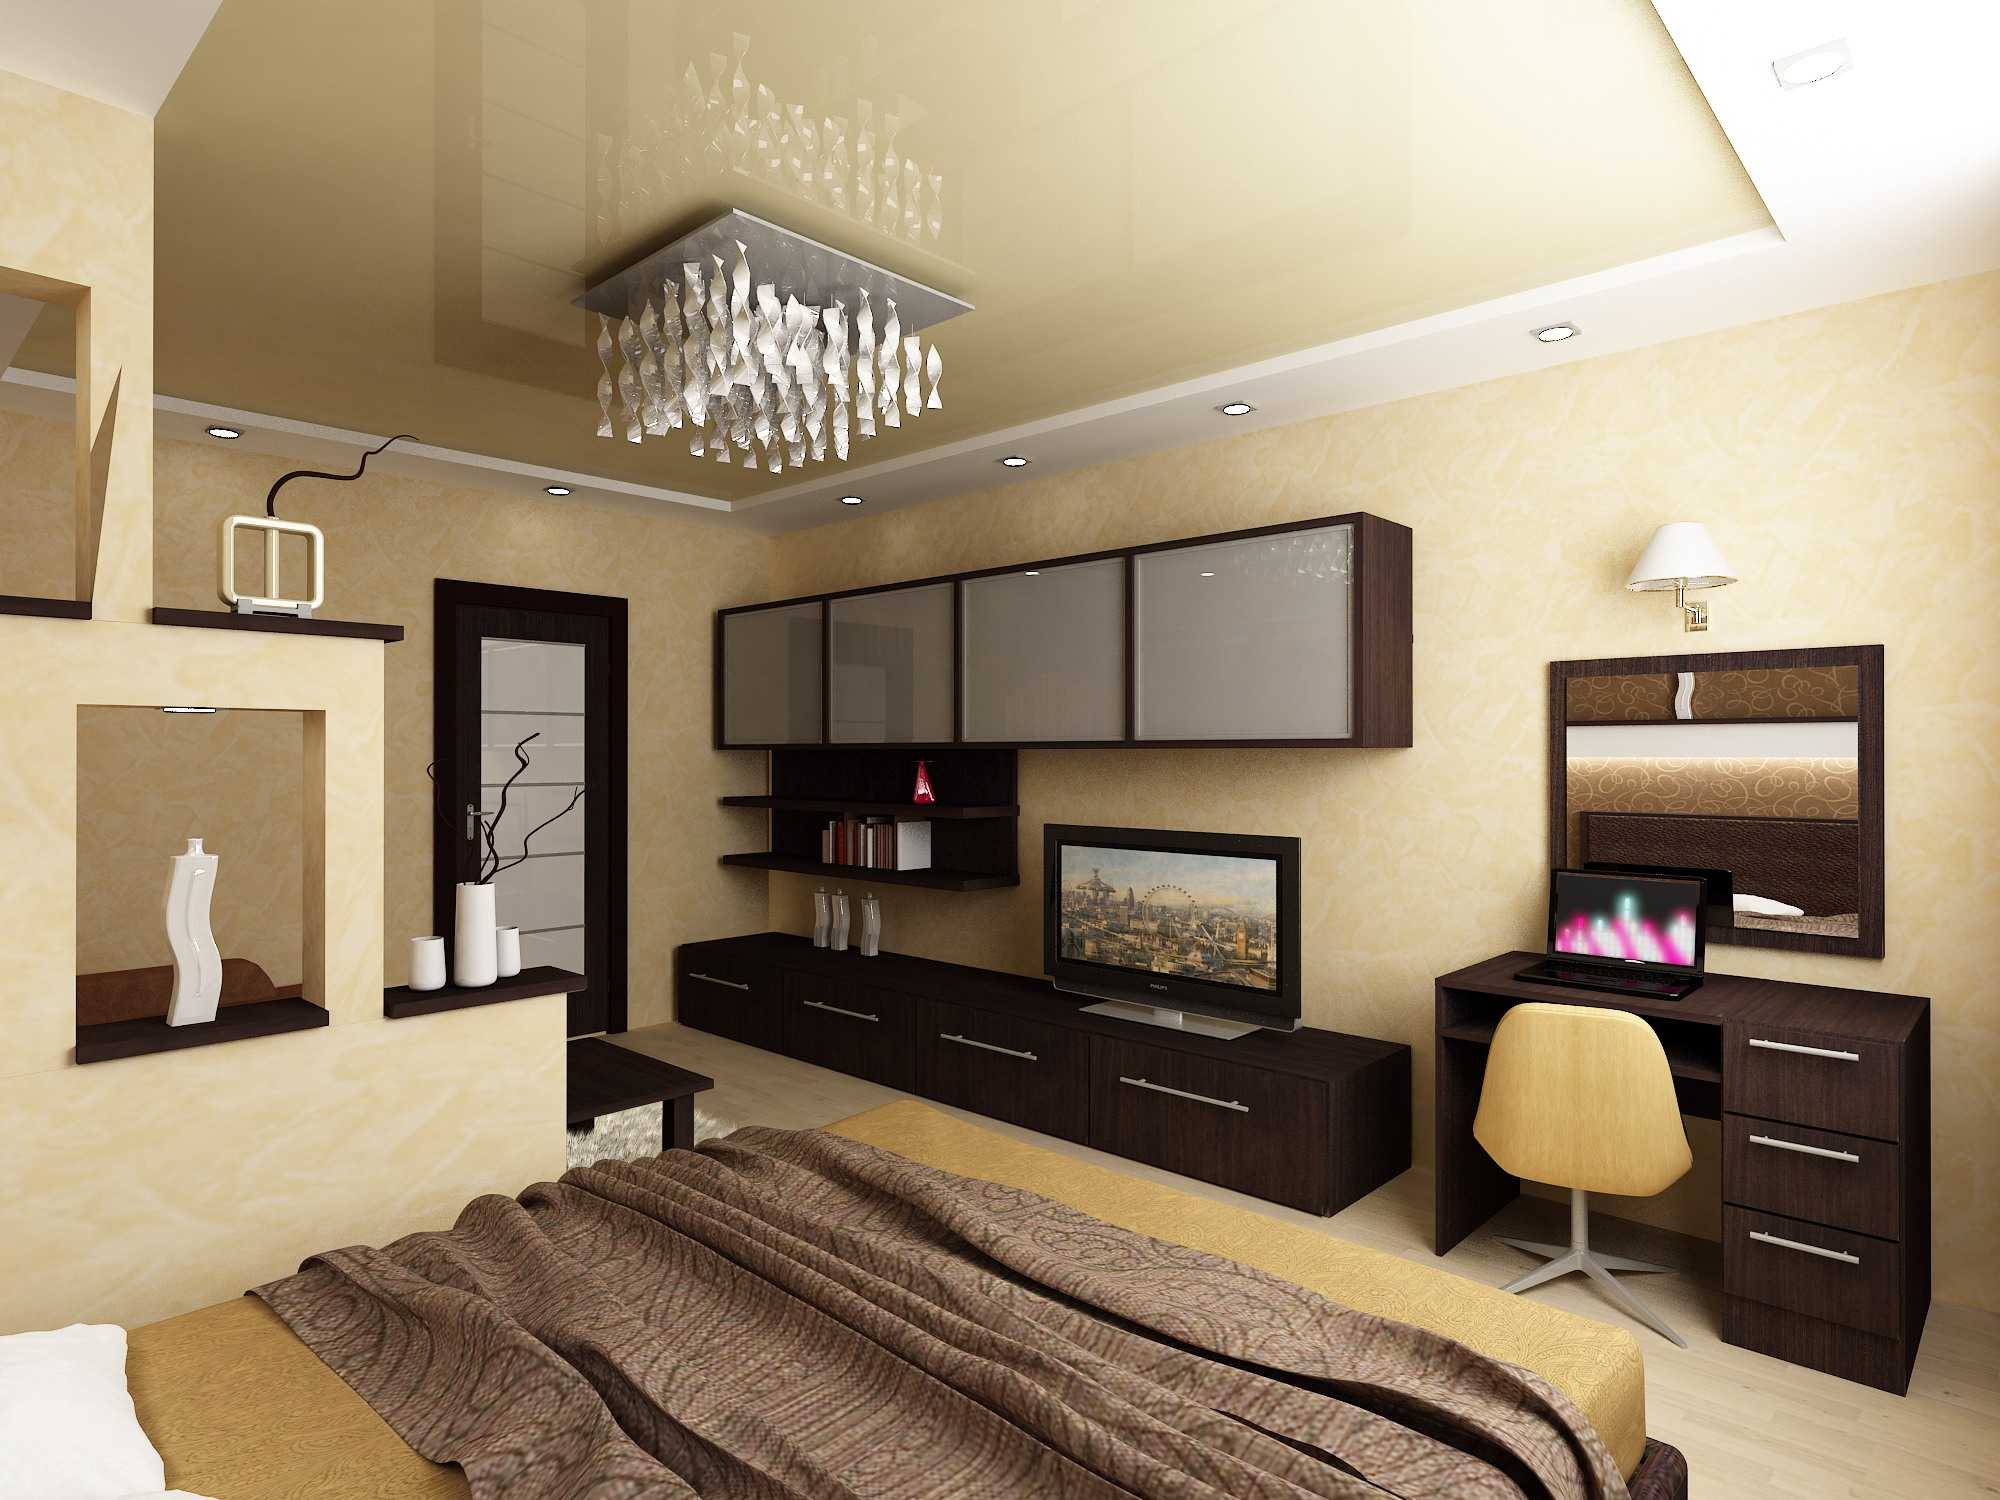 Квадратная спальня - 100 фото лучших идей дизайна, планировки и зонирования спальни